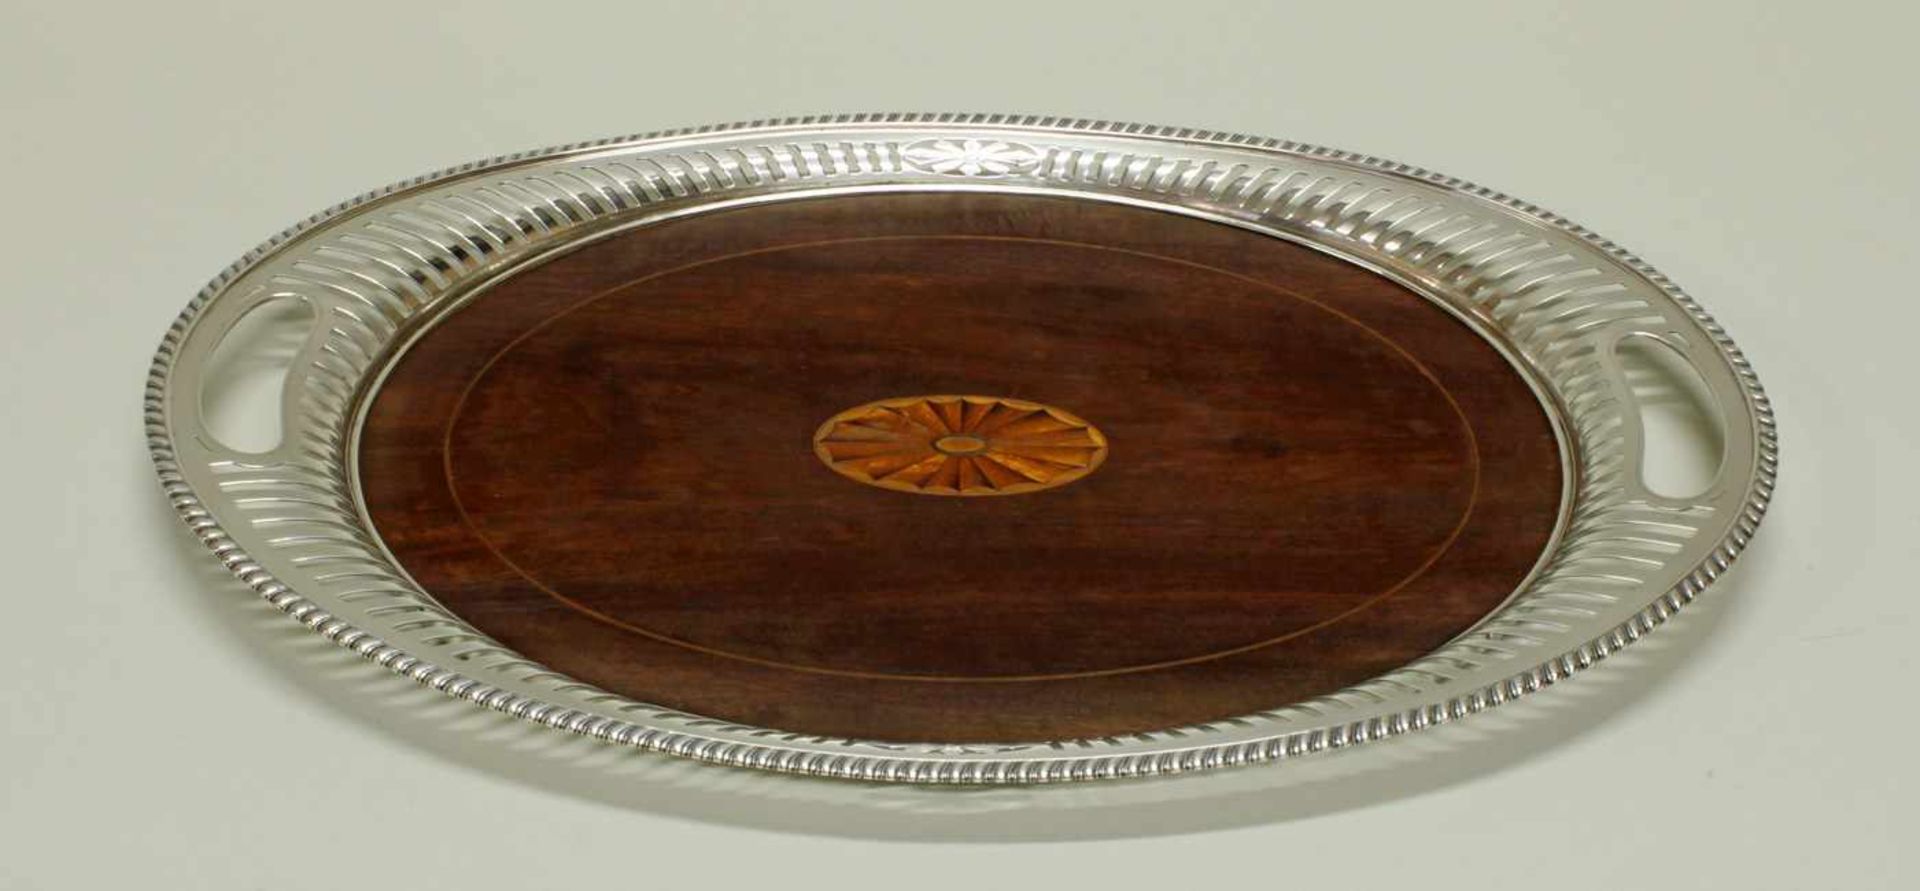 Tablett, Silber 925, oval, Spiegel aus Mahagoni mit Fächerintarsie, Rand à jour gearbeitet mit - Image 2 of 2